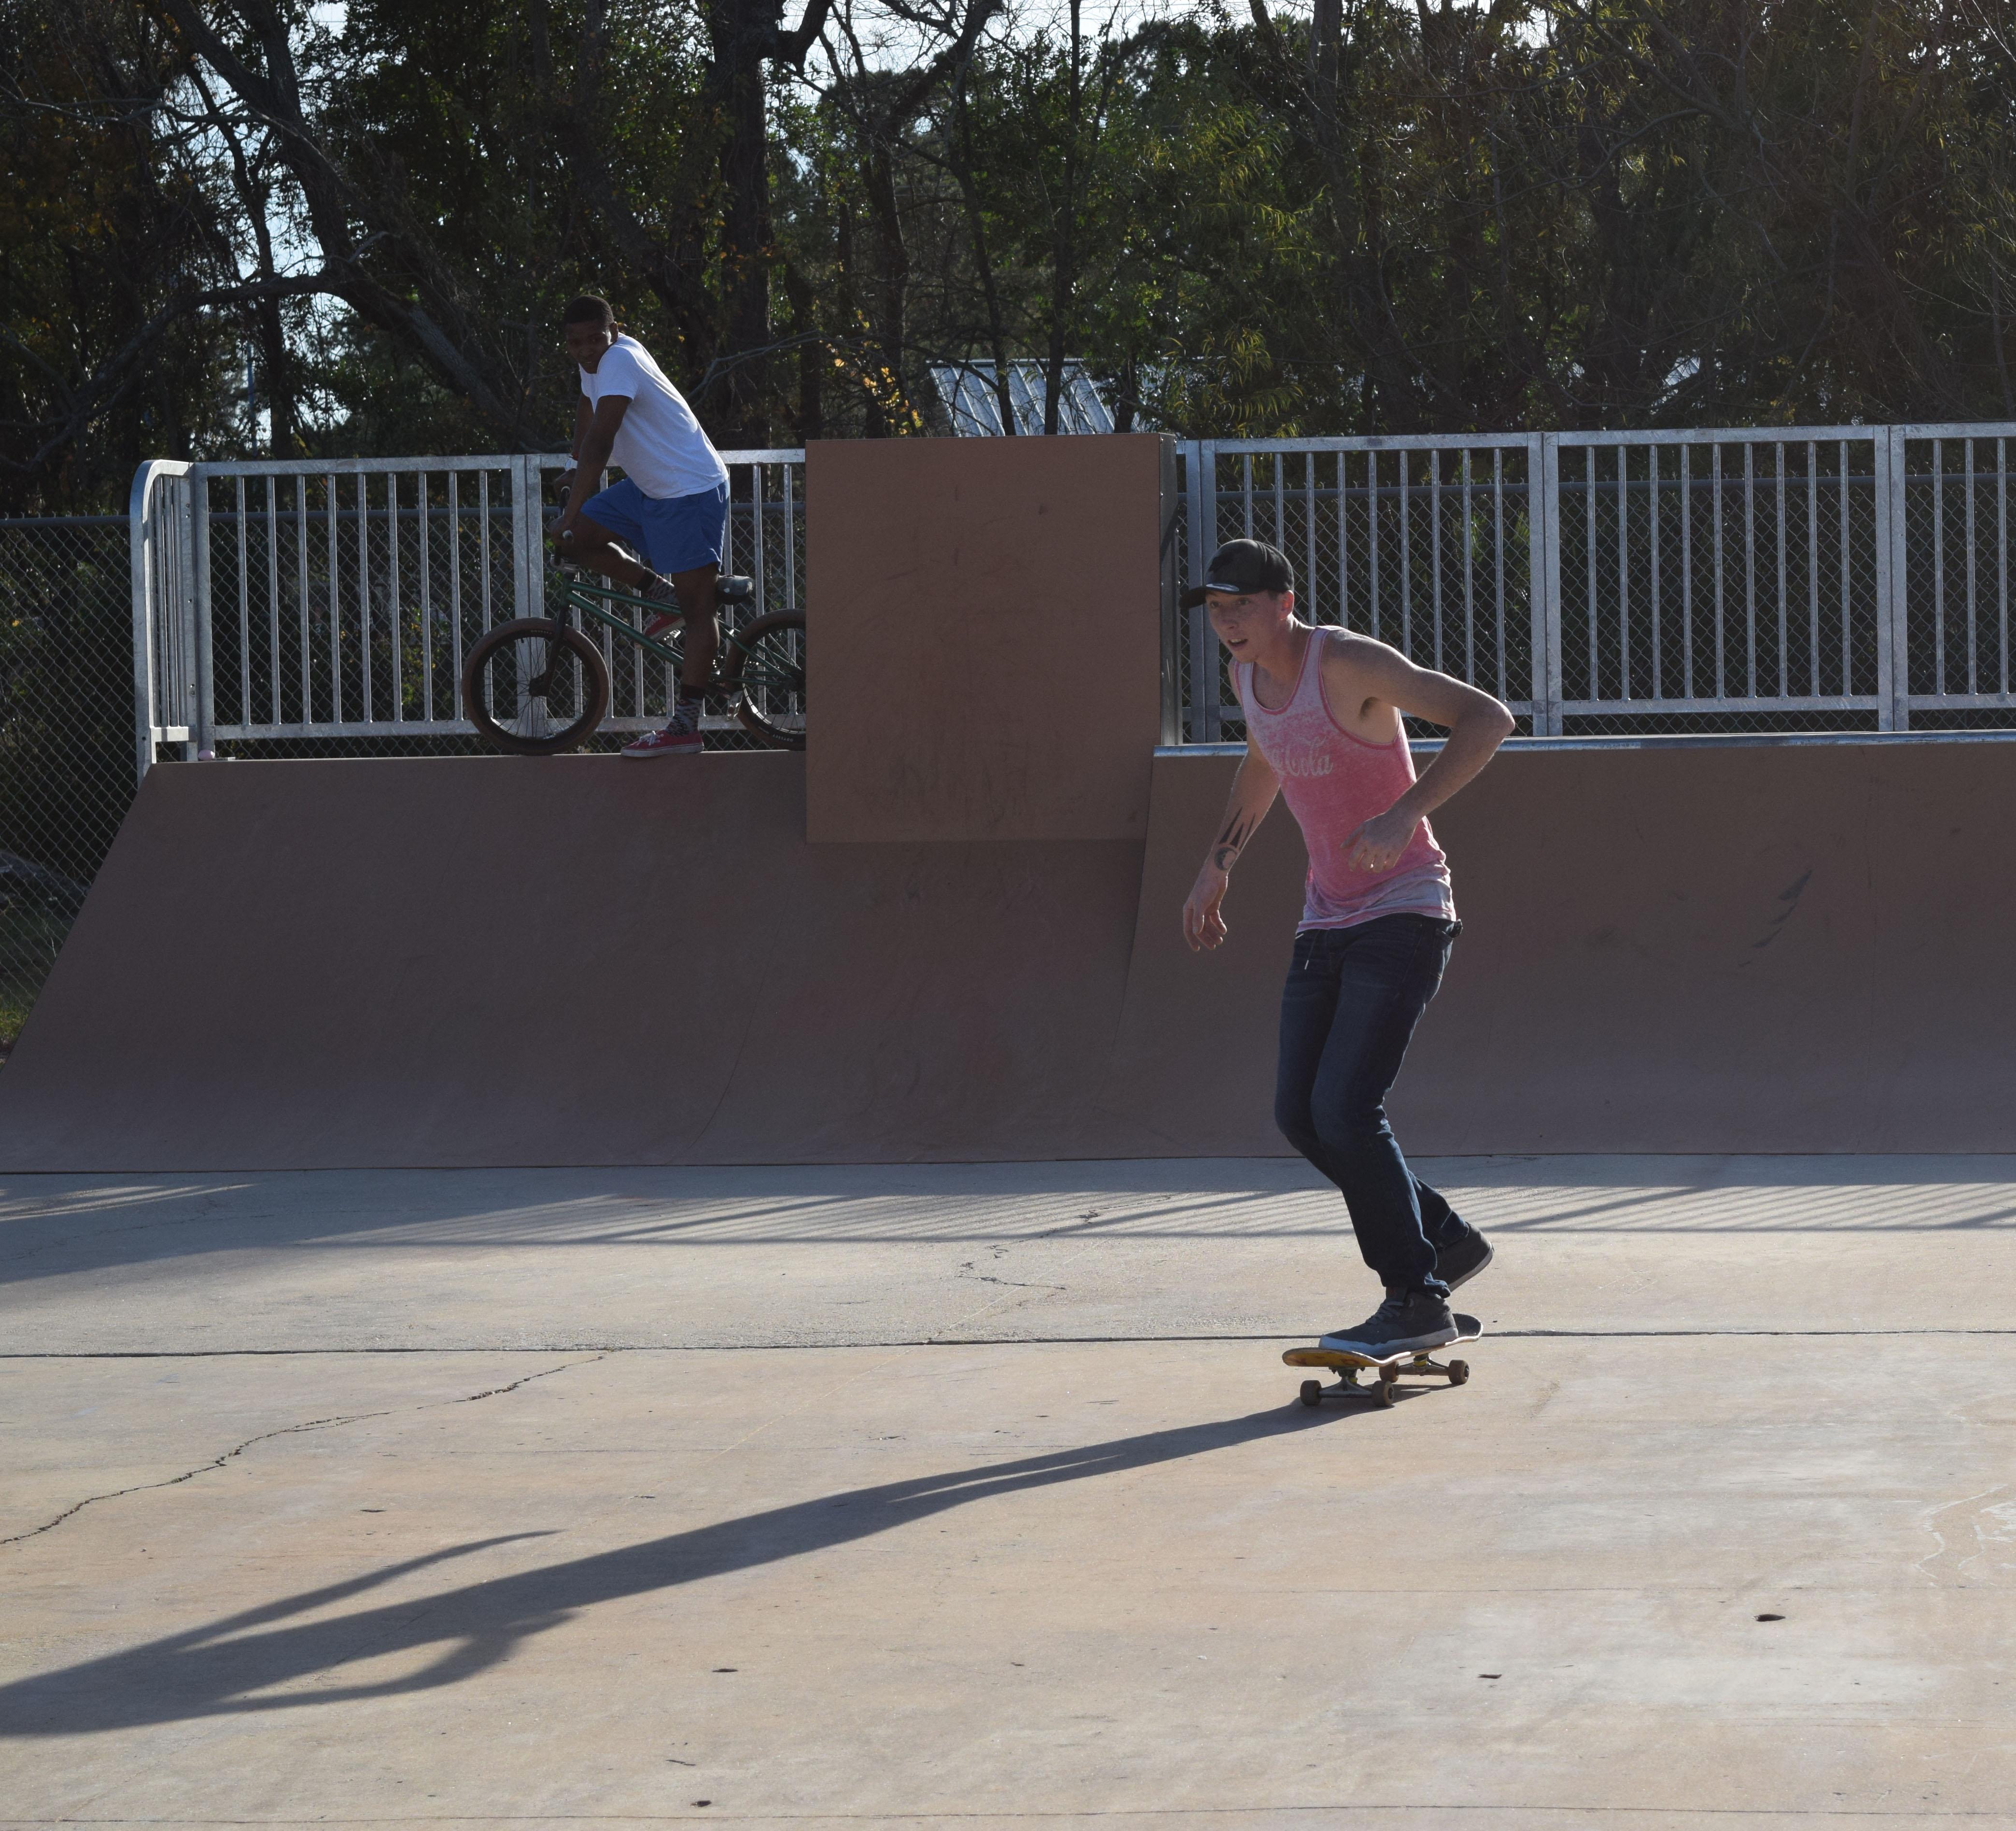 Photos: PHOTO GALLERY: Skaters take to new FWB skate park ...